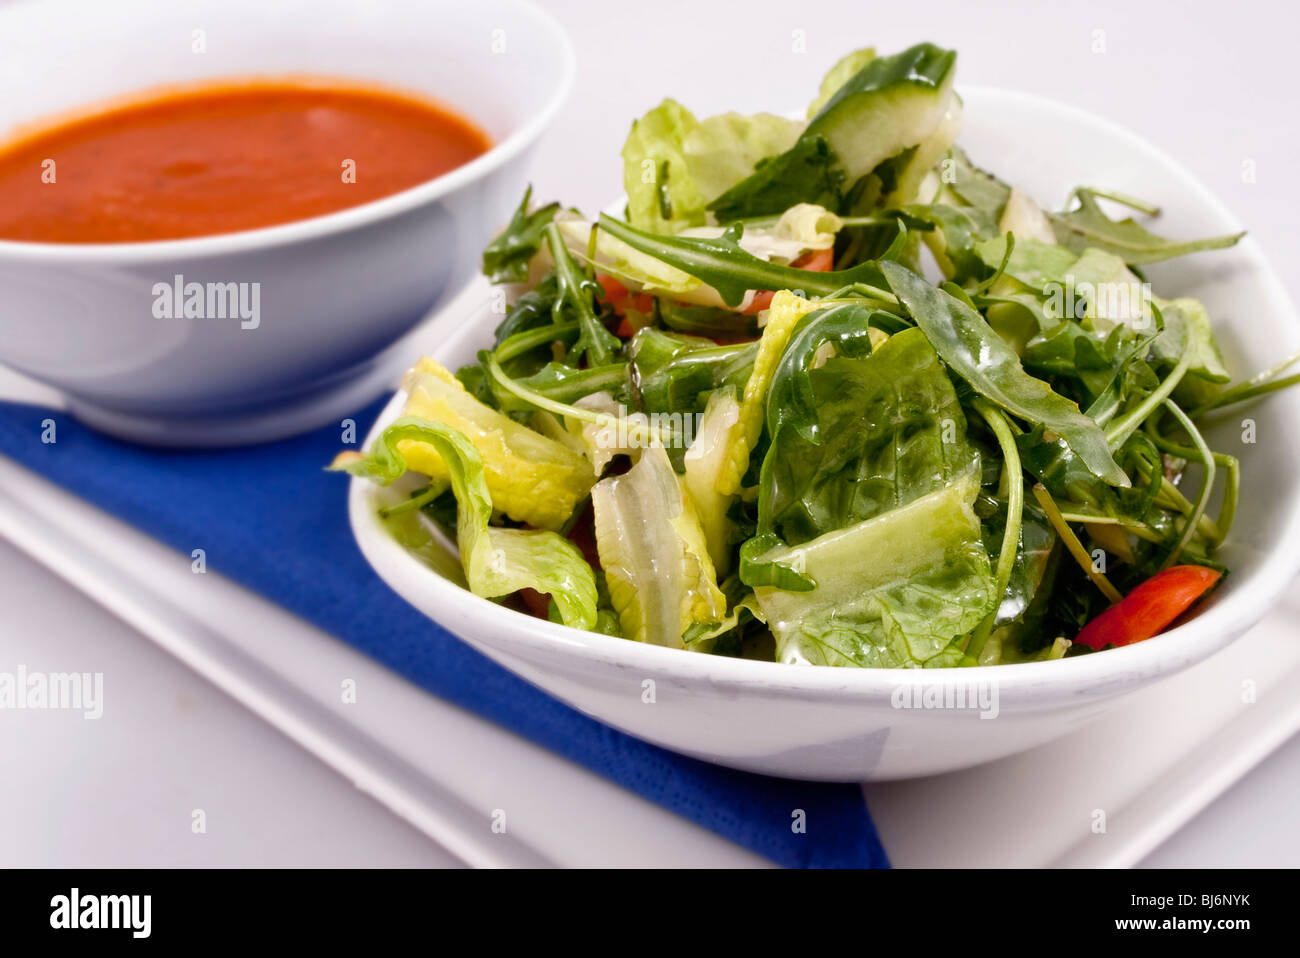 Schüssel mit Tomatensuppe & Salat Stockfoto